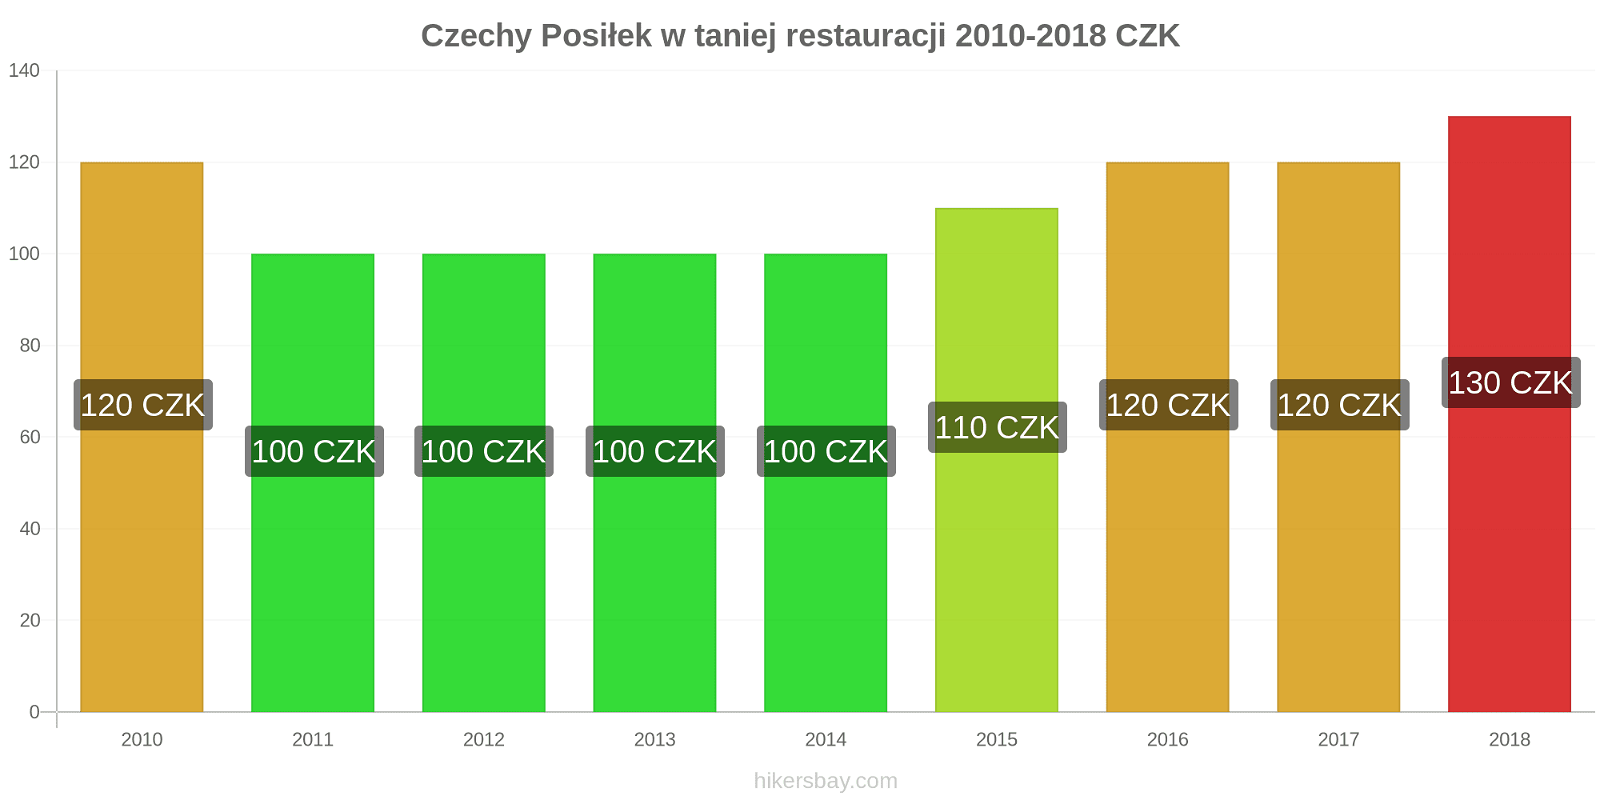 Czechy zmiany cen Posiłek w taniej restauracji hikersbay.com